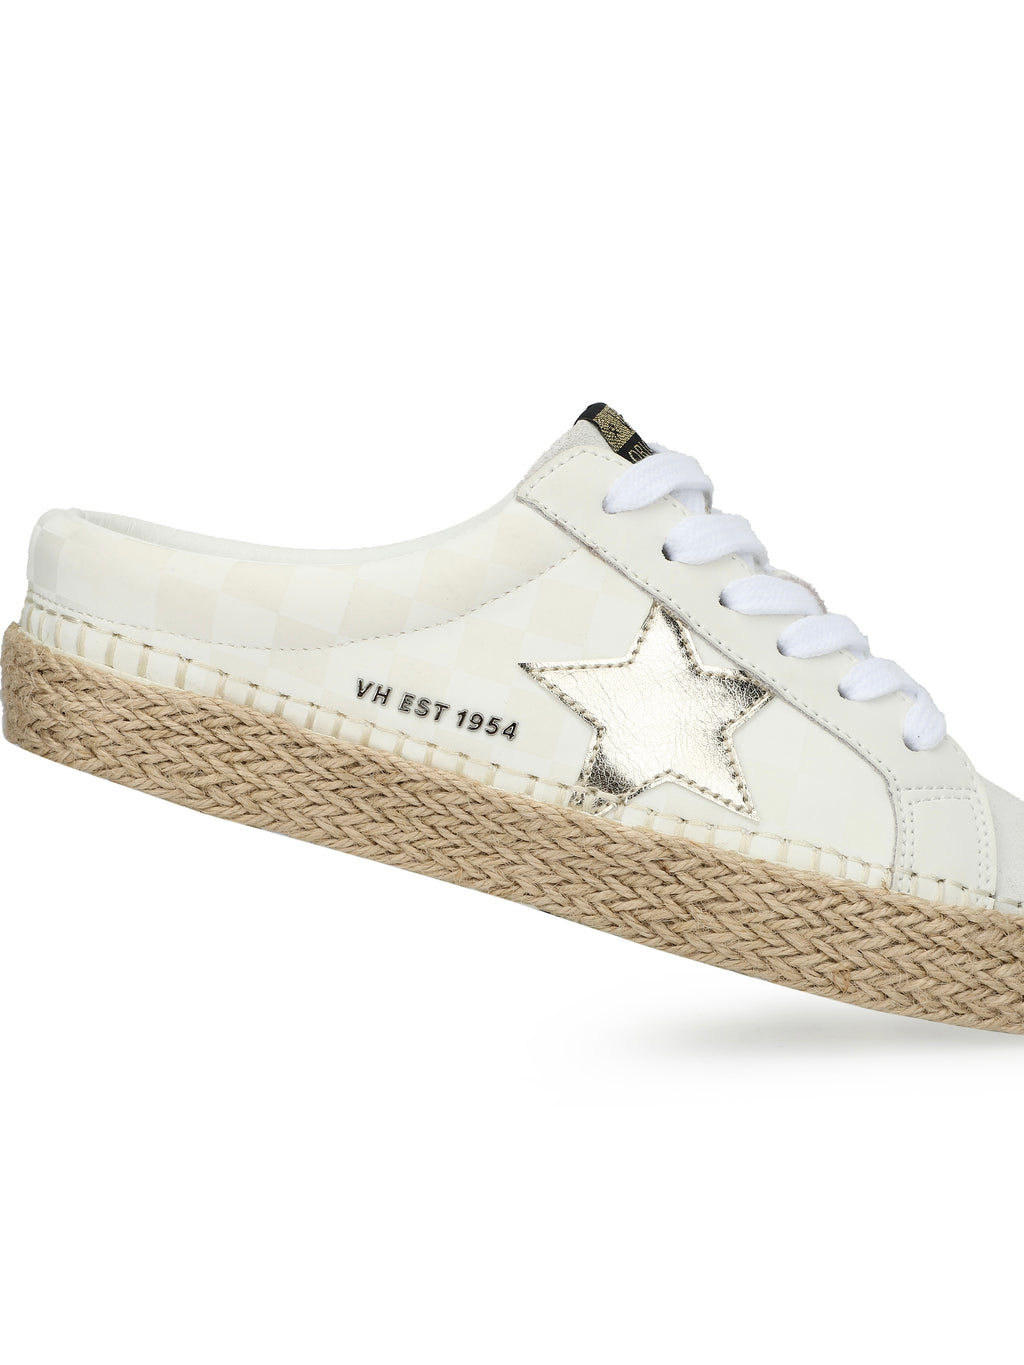 Cream tennis shoe 